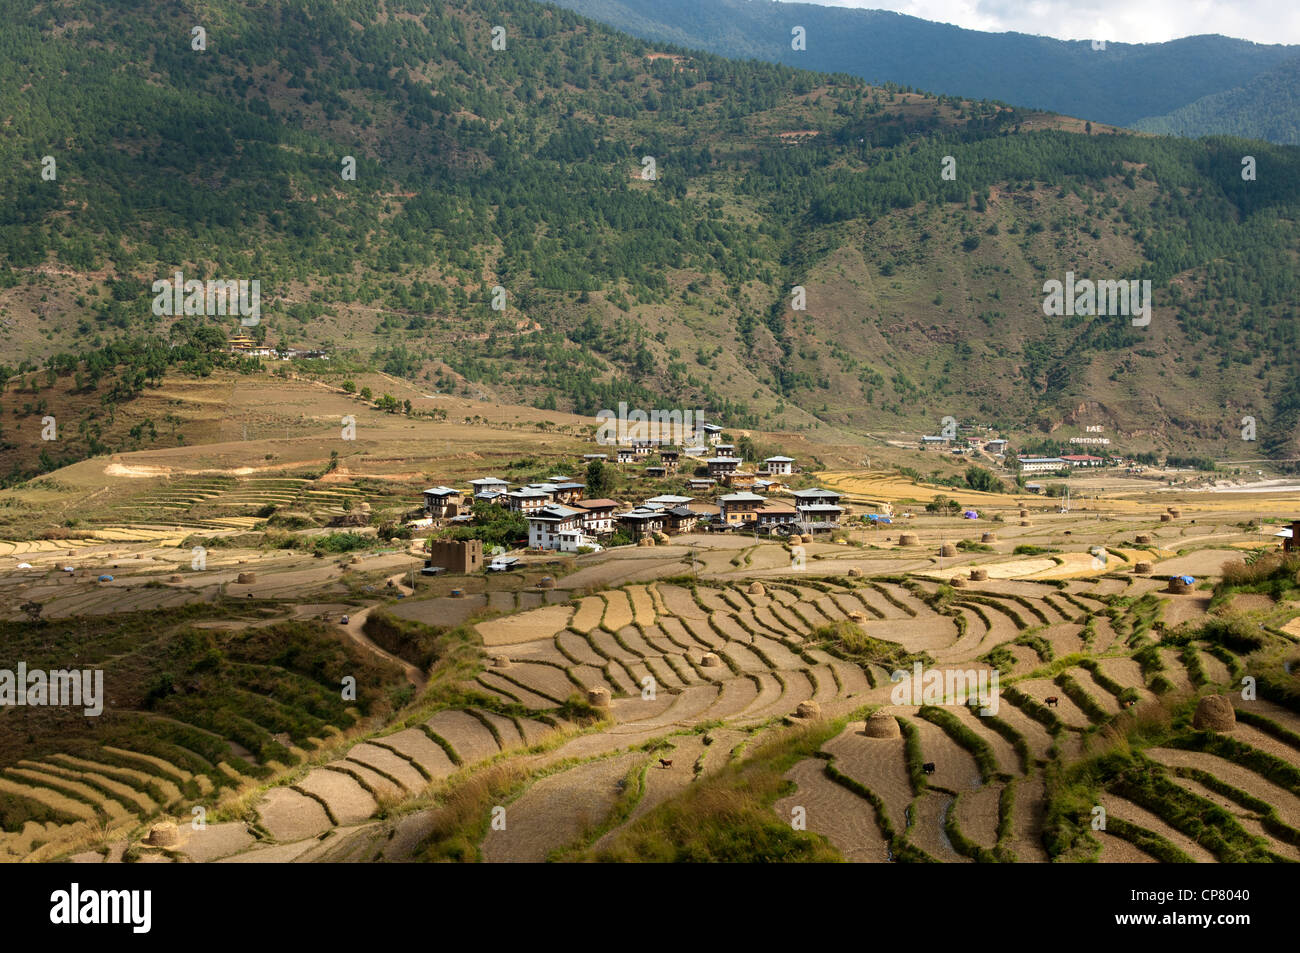 Sopsokha inmidst le village de parcelles de riz en terrasses, le Bhoutan Banque D'Images